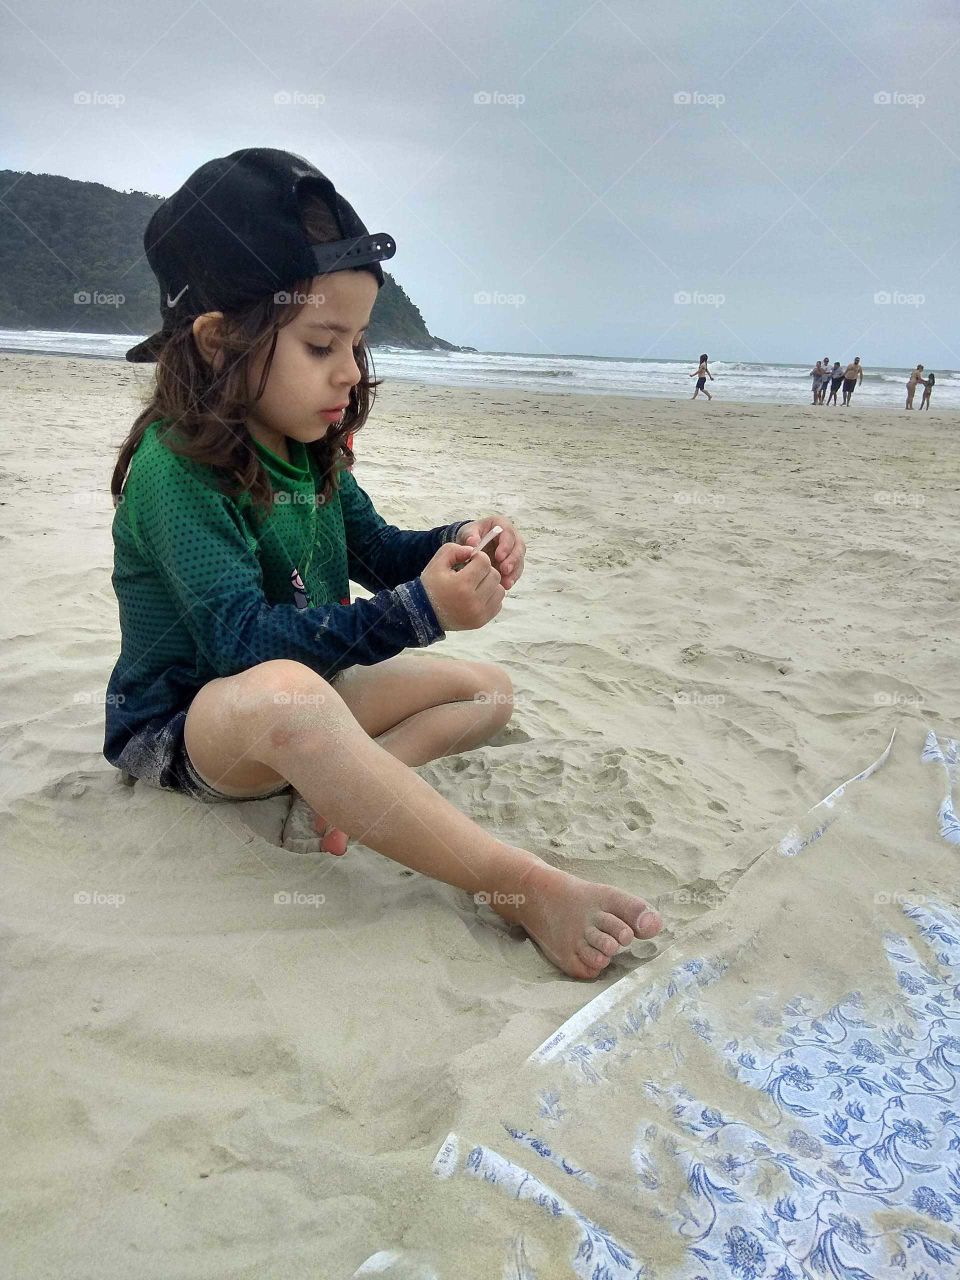 Criança Brincando na Praia #brincandeira 
#mar # paisagem #sol